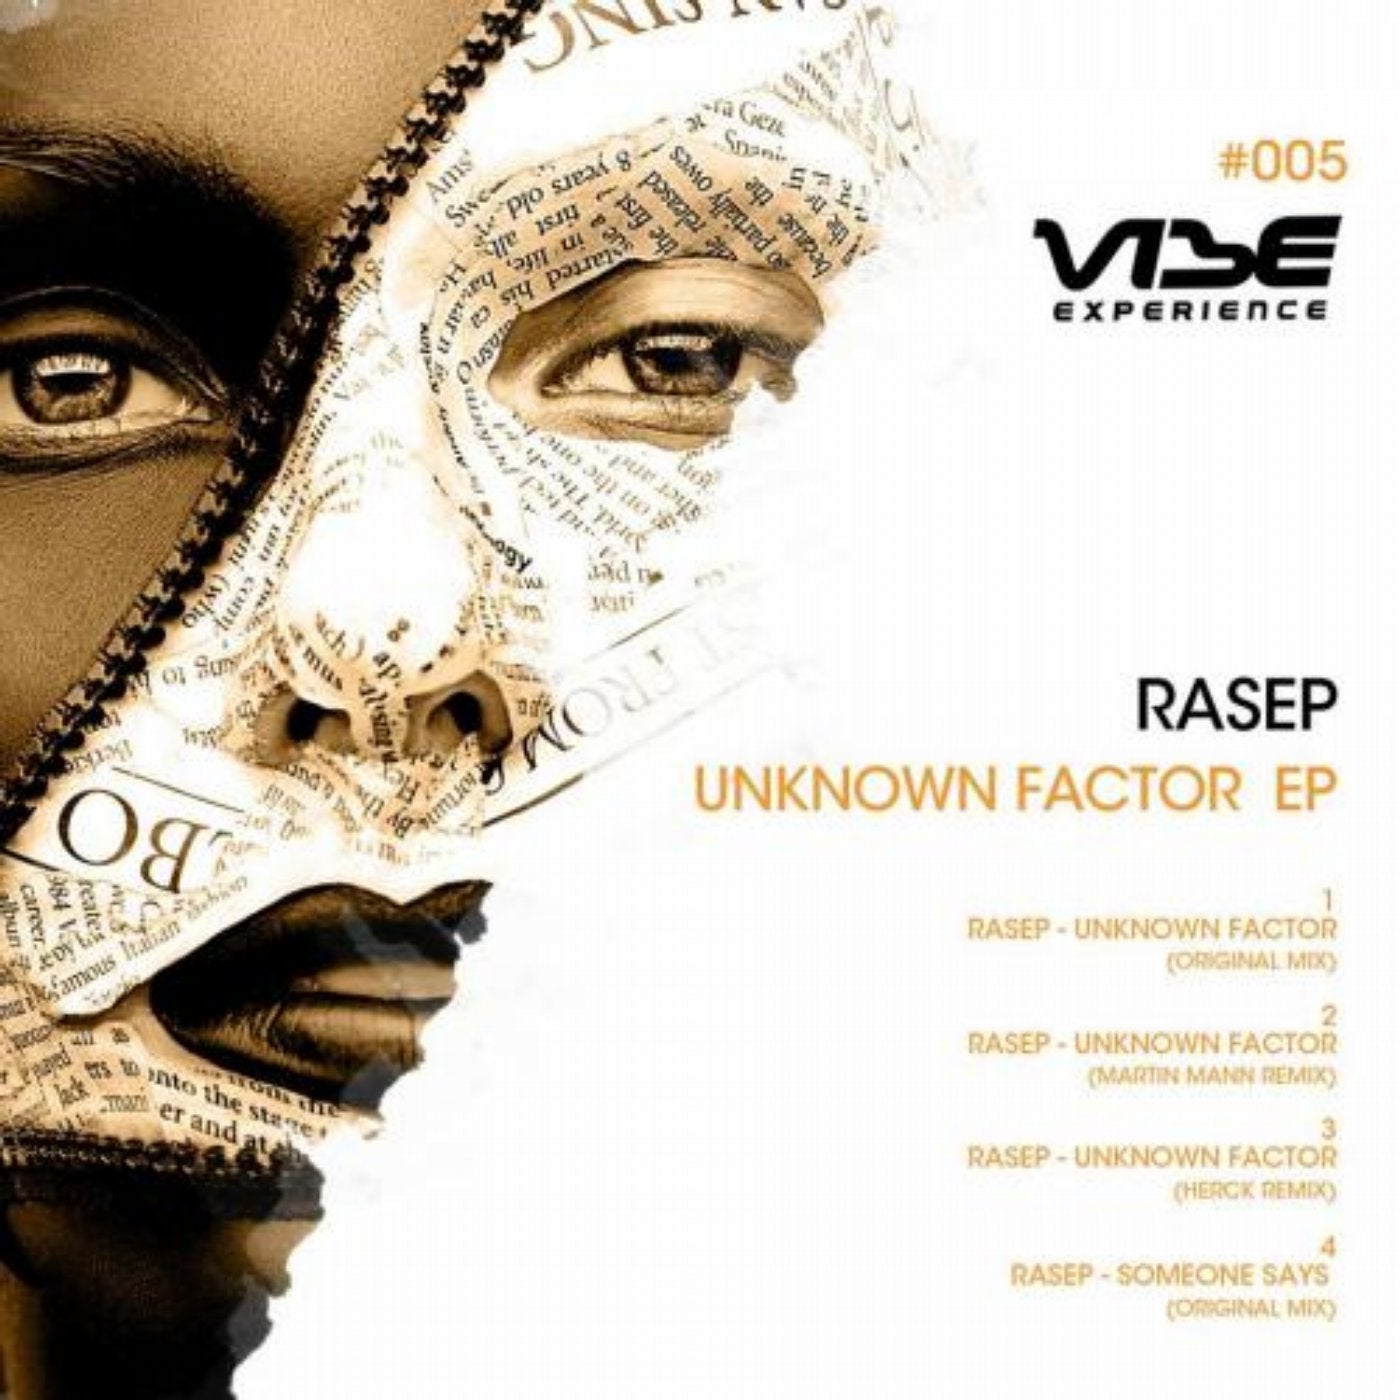 Rasep music download - Beatport